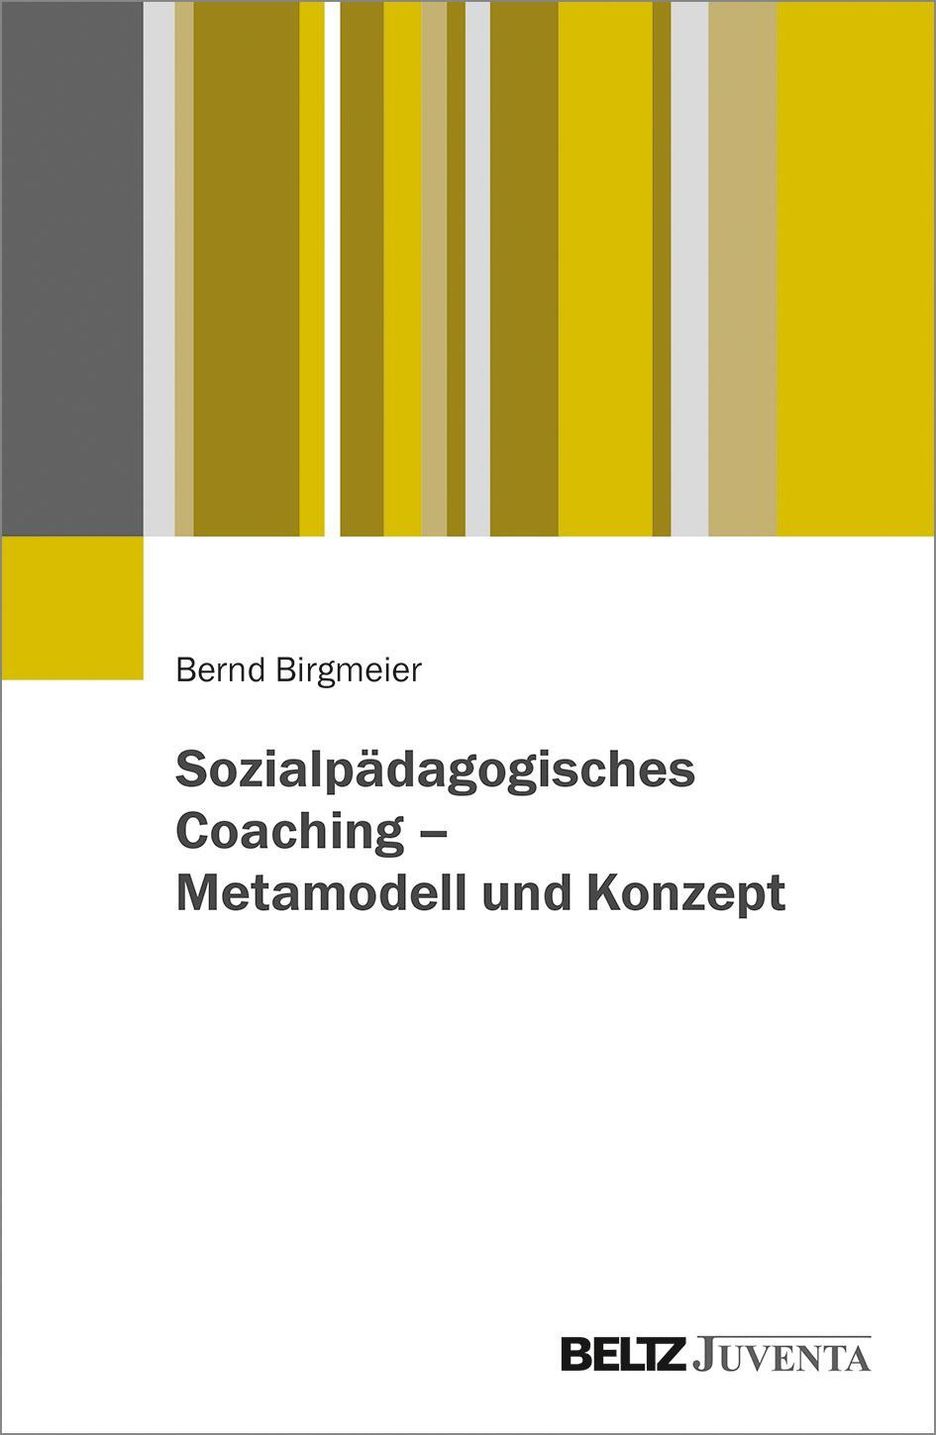 Sozialpädagogisches Coaching - Metamodell und Konzept | Weltbild.ch